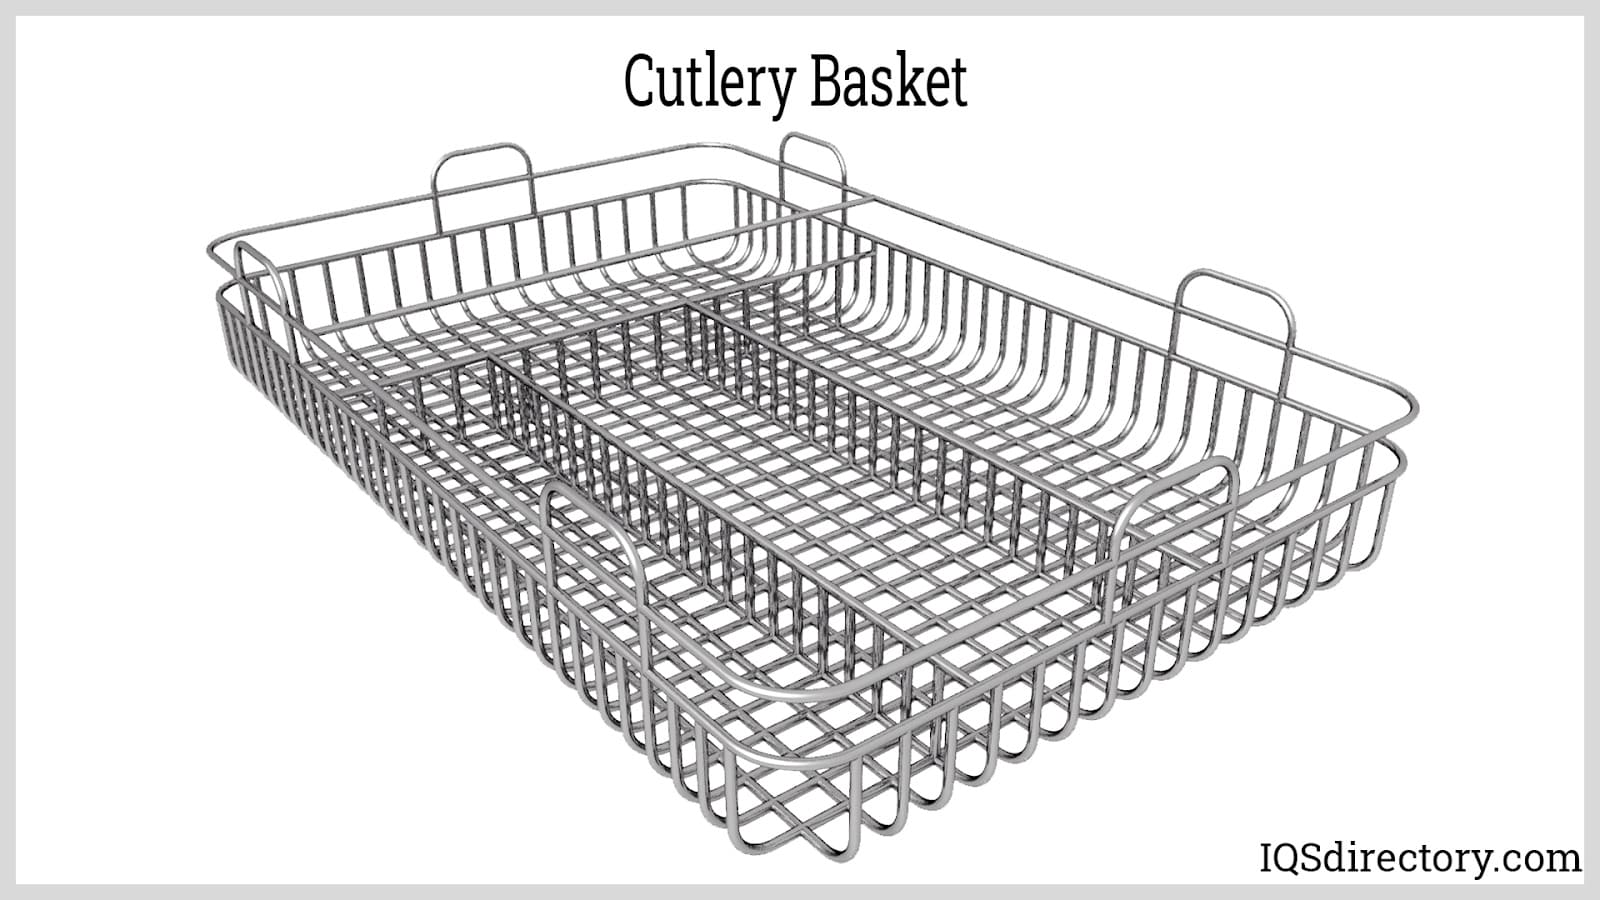 https://www.wire-forms.net/wp-content/uploads/2022/11/cutlery-basket.jpg